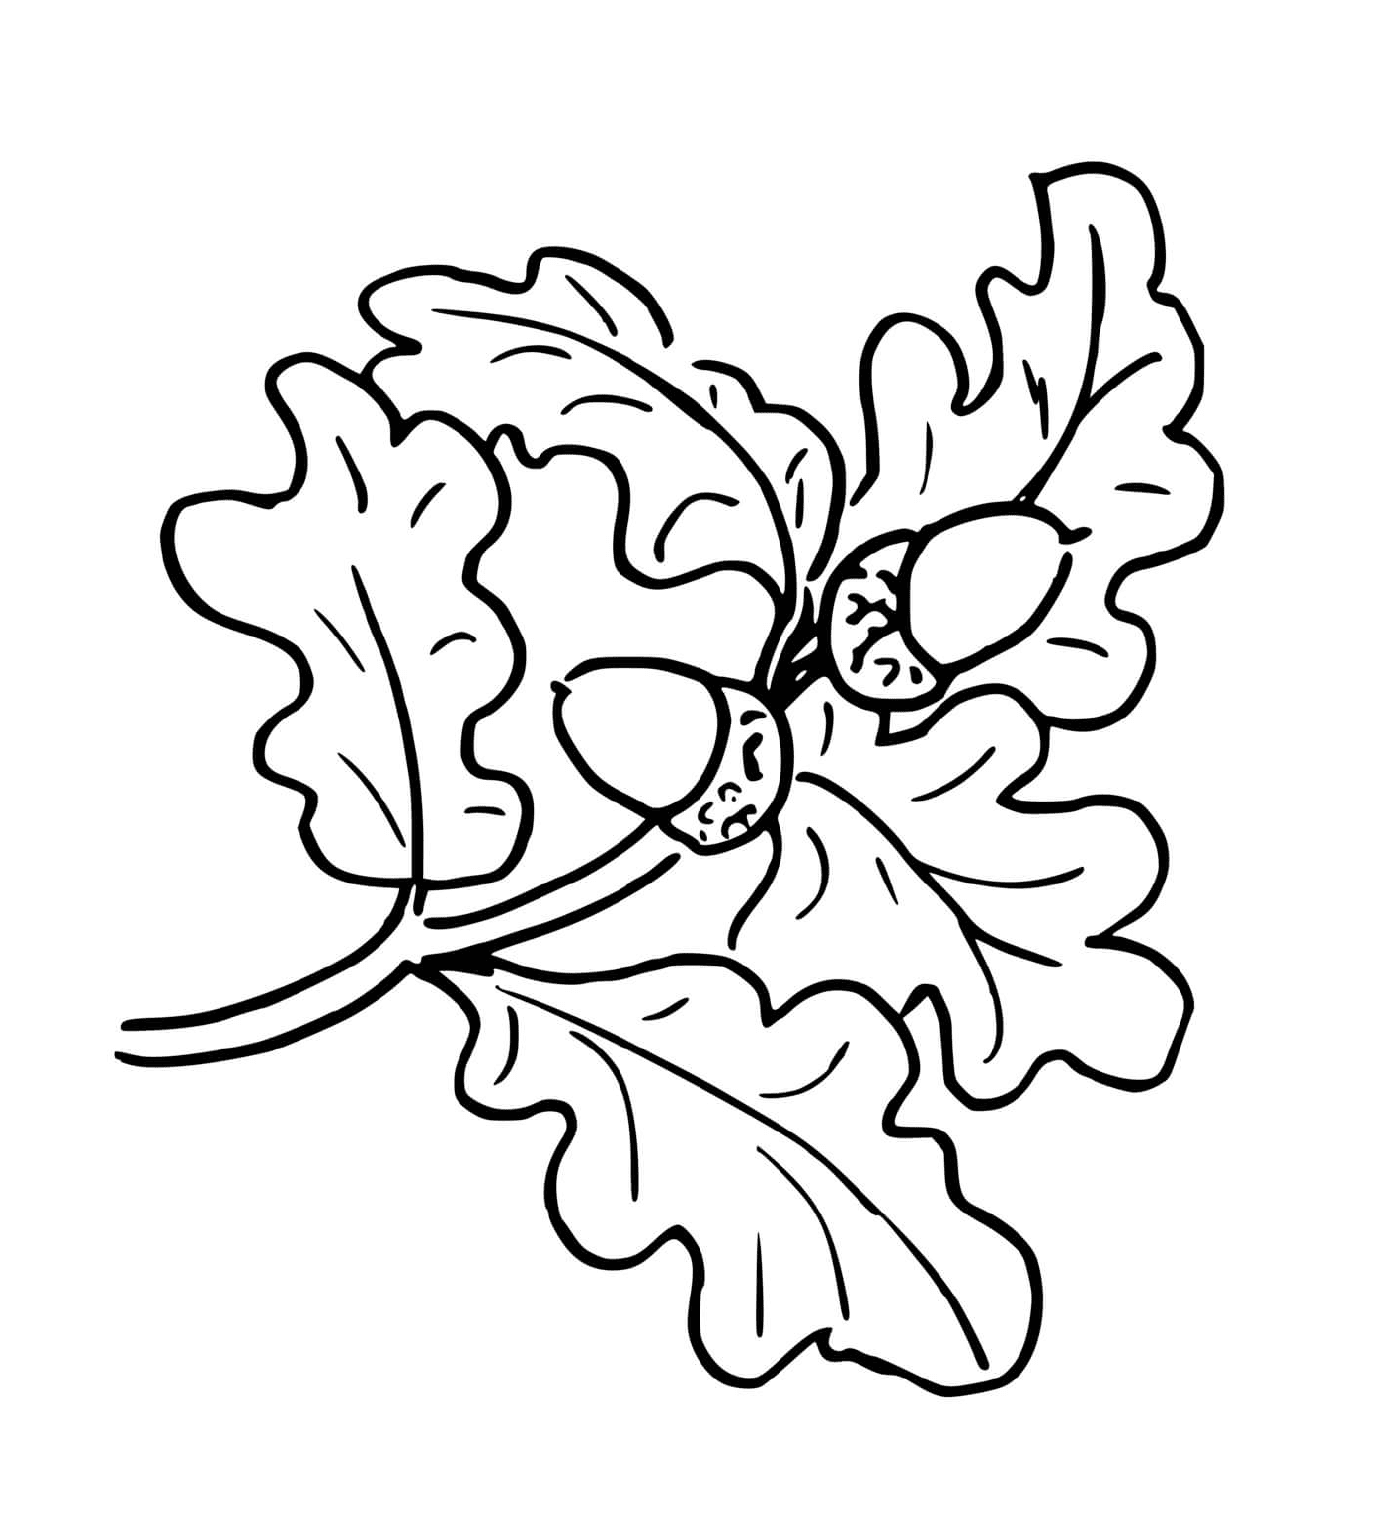   Feuille de chêne d'automne avec glands 